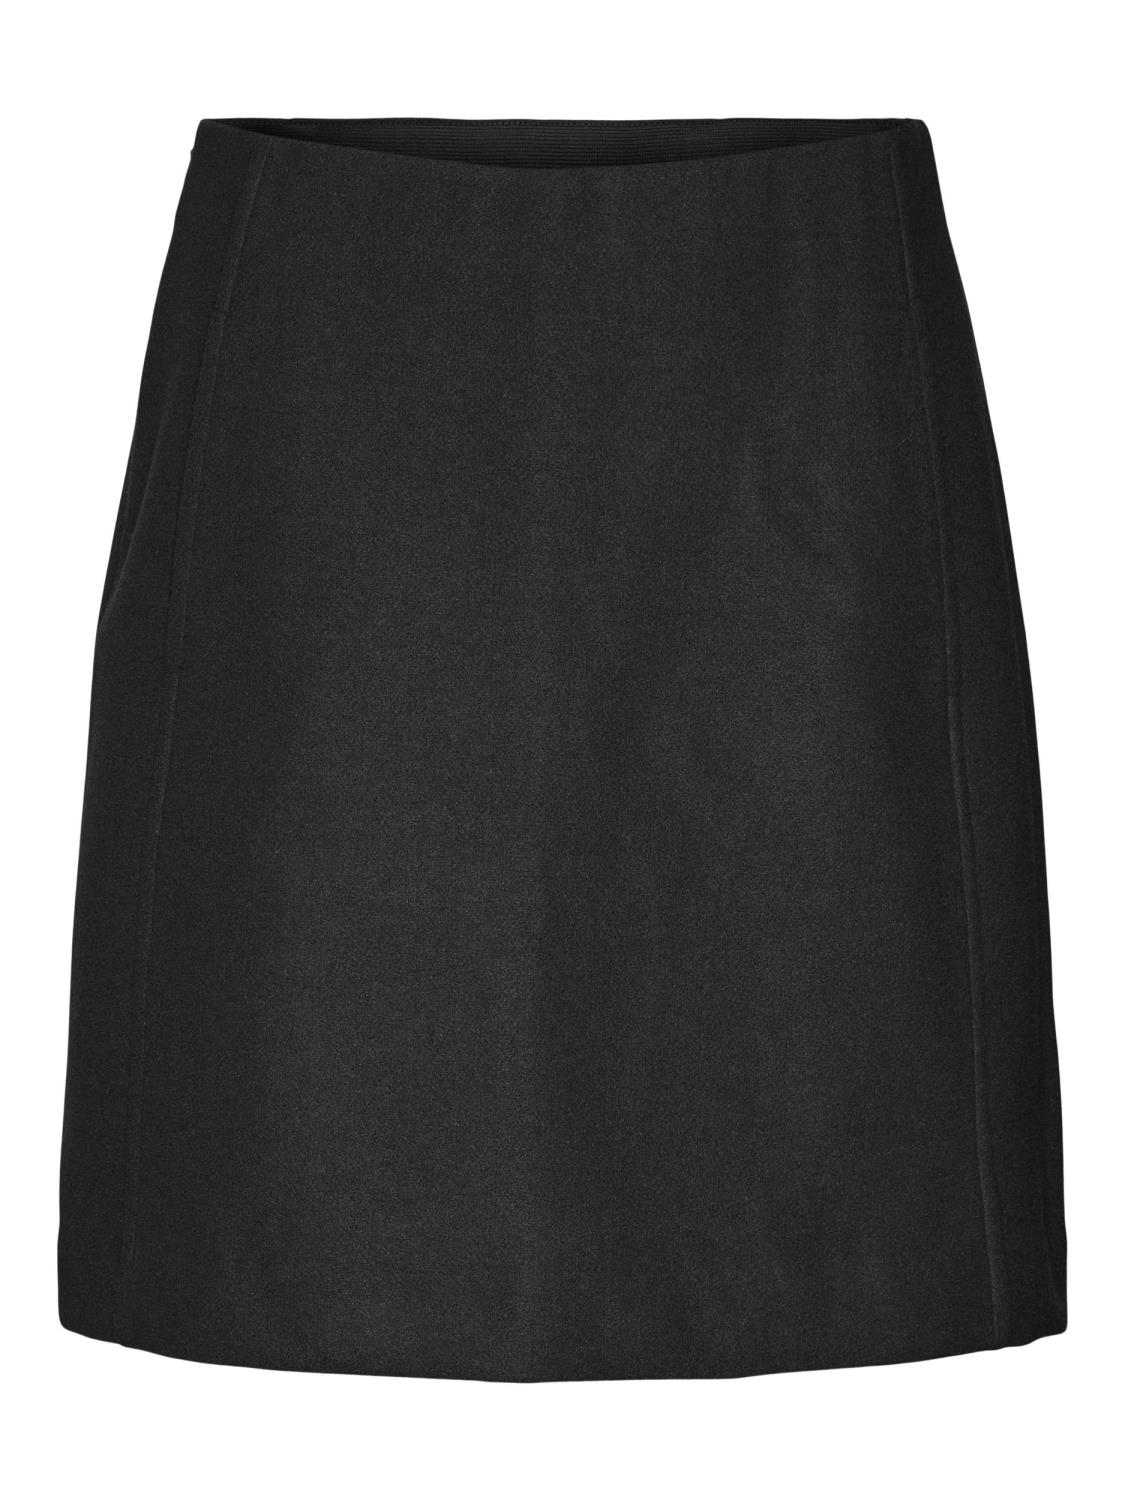 VMFORTUNEALLISON hw short skirt Dark grey